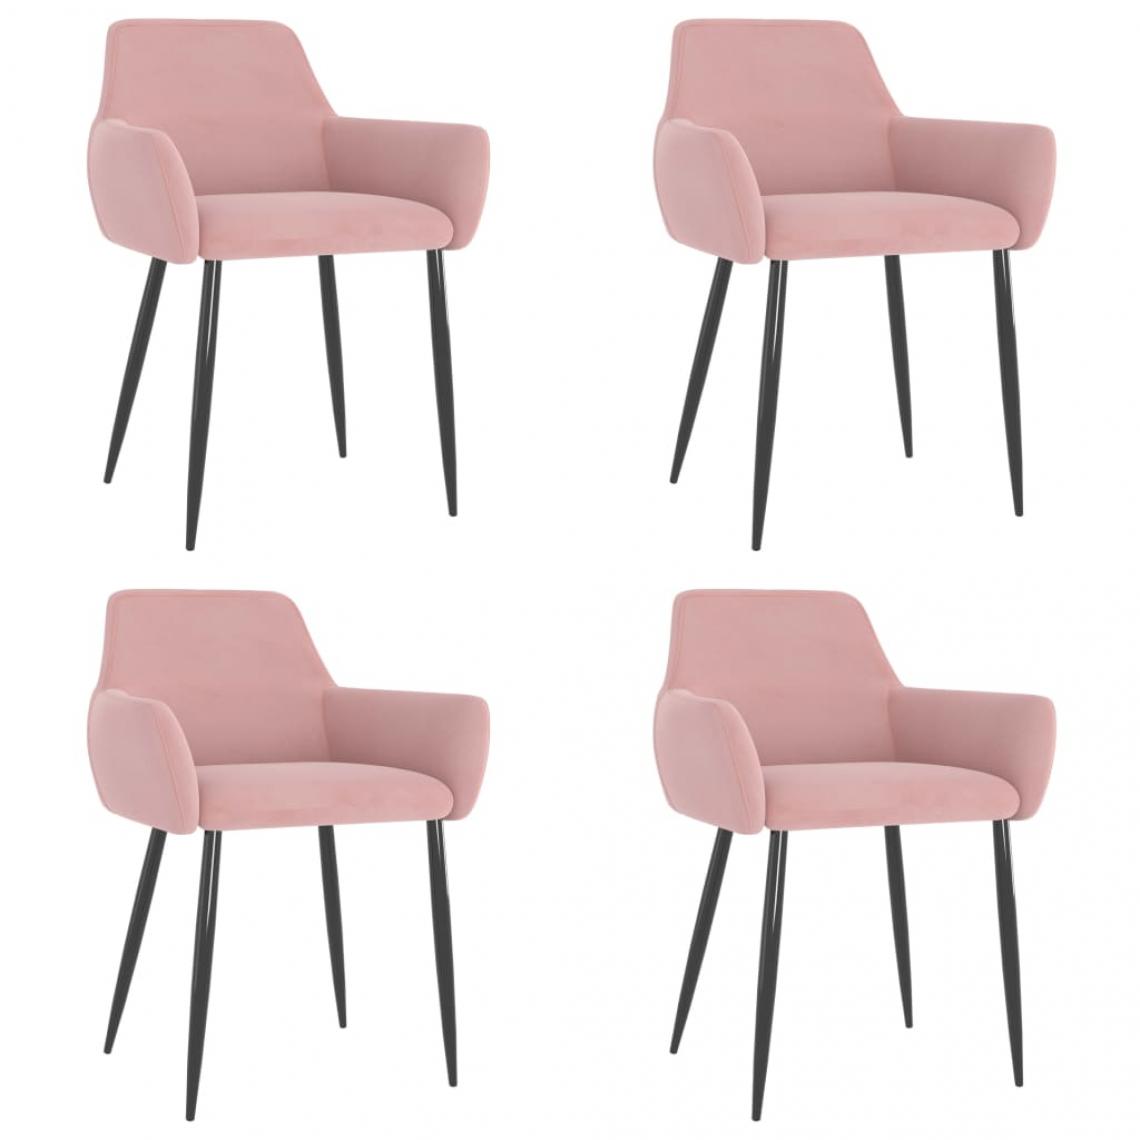 Decoshop26 - Lot de 4 chaises de salle à manger cuisine design moderne velours rose CDS021925 - Chaises